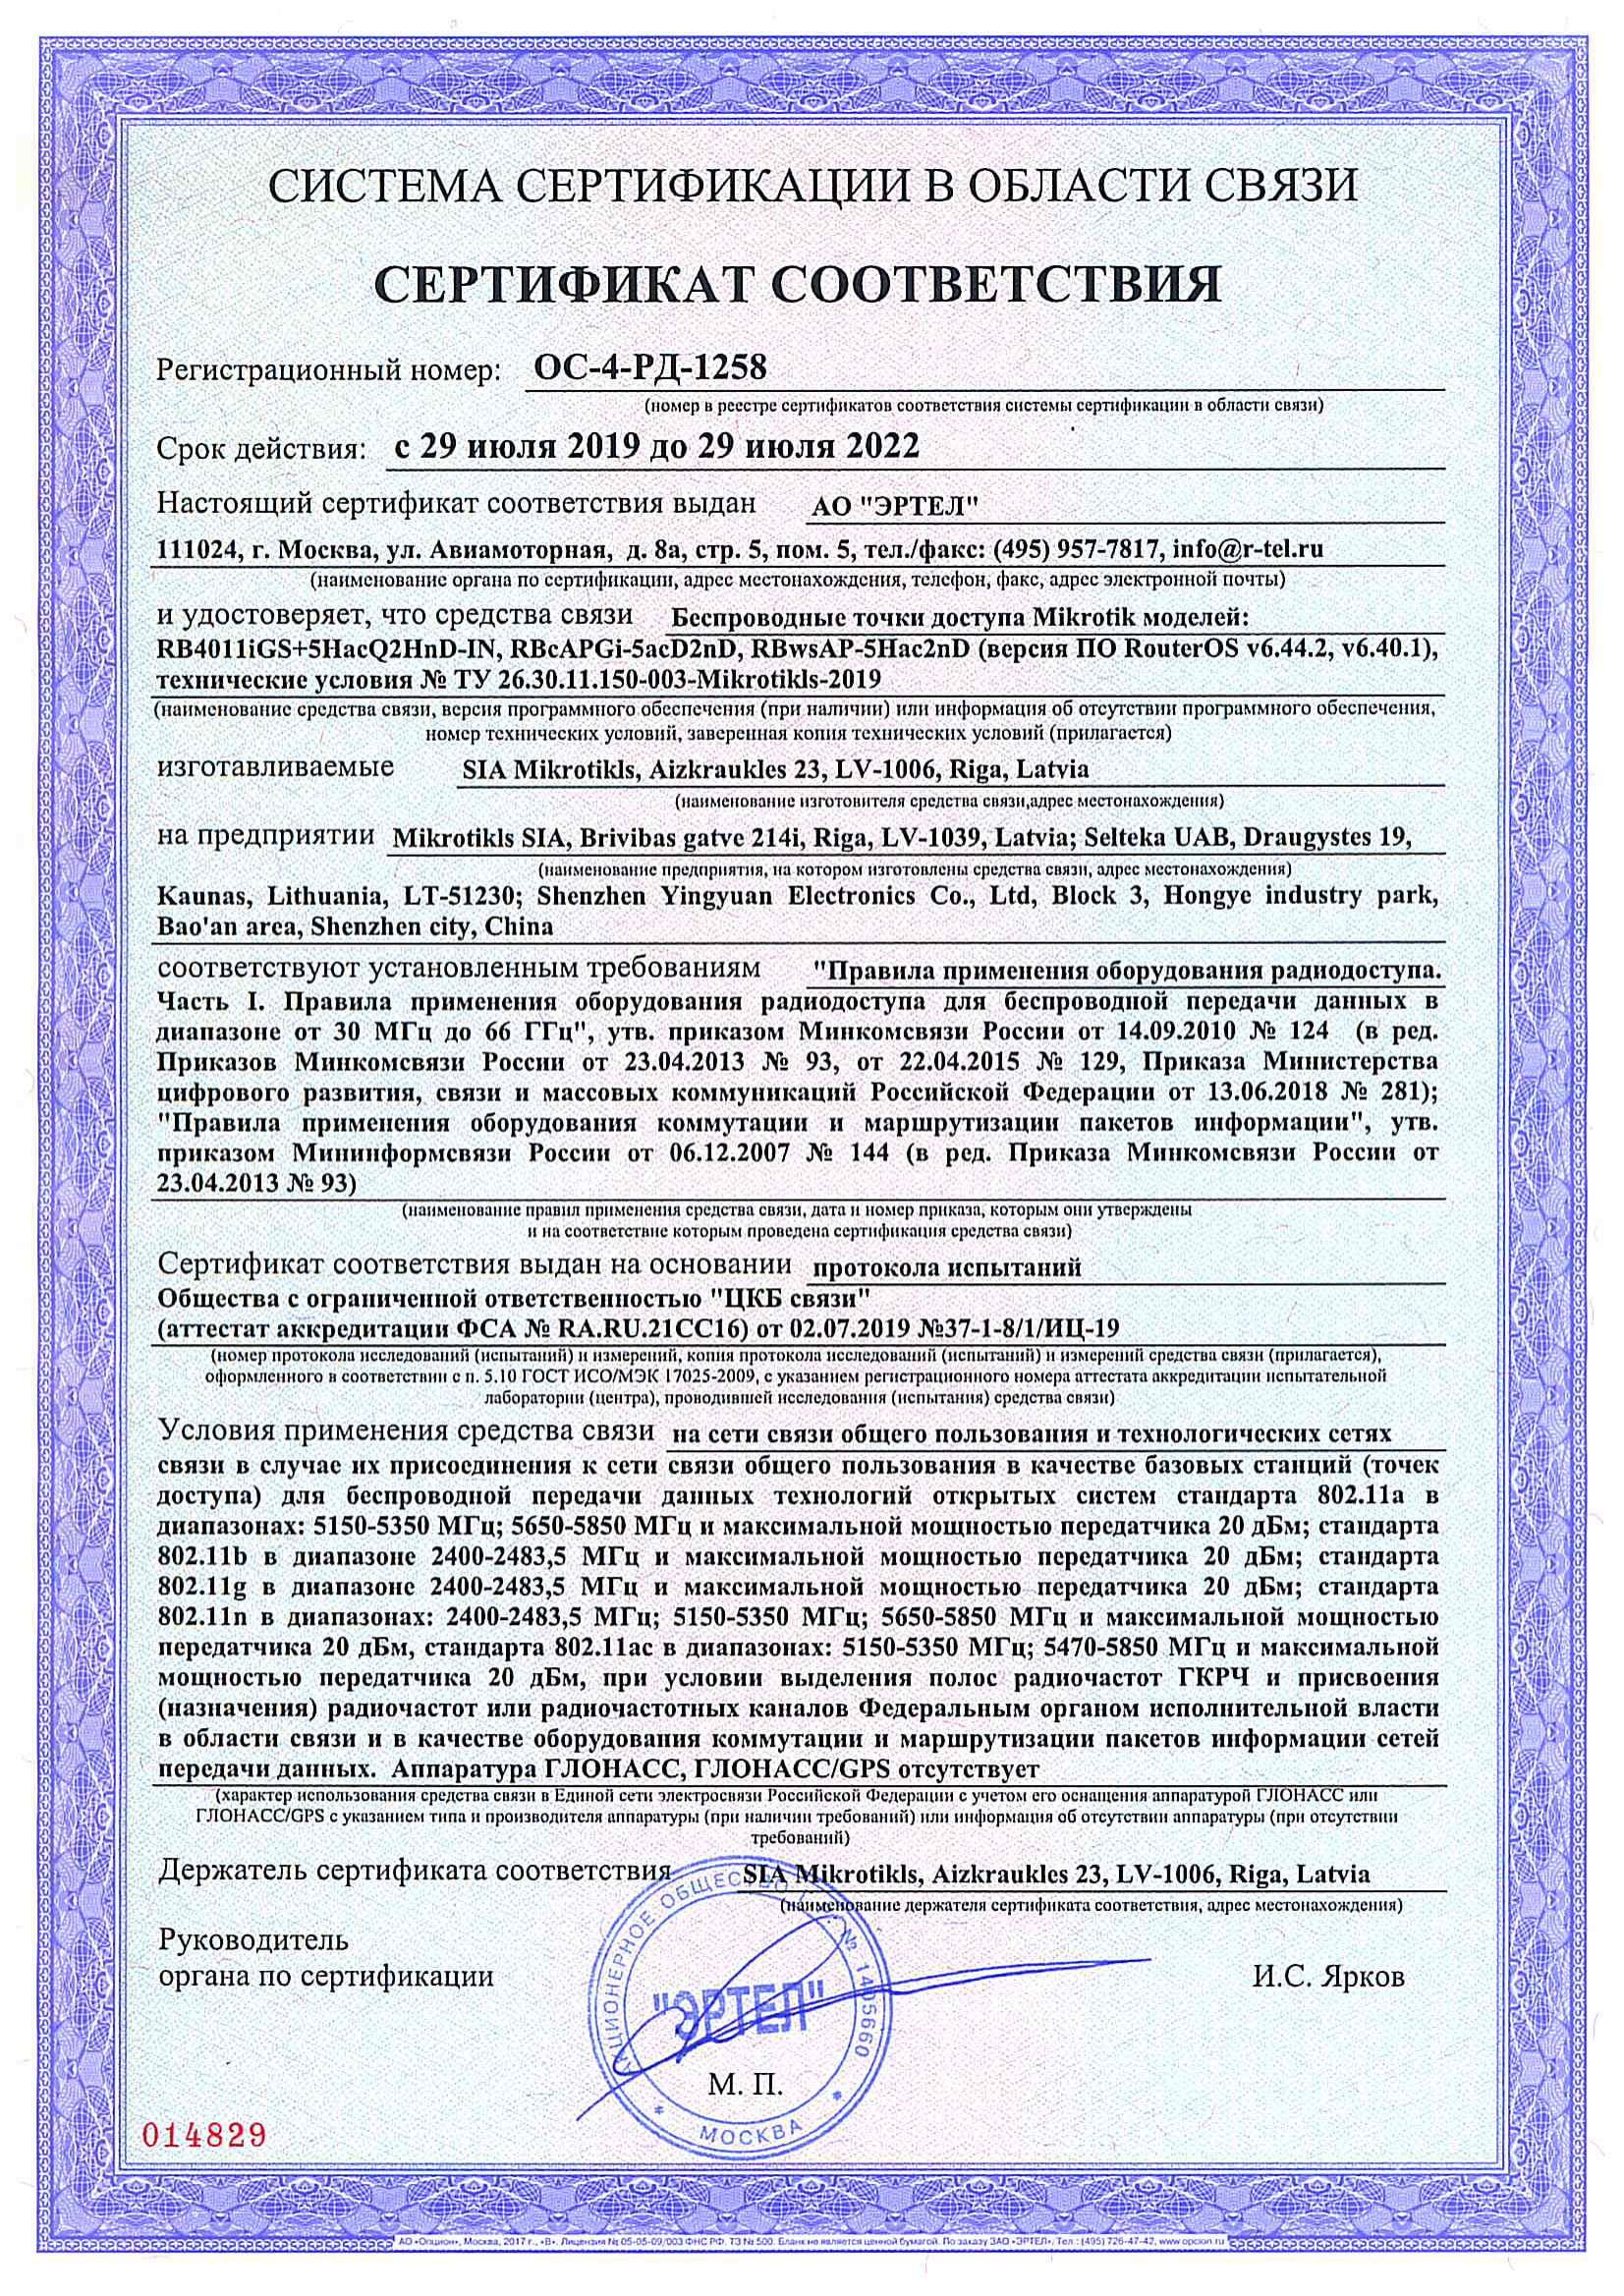 Сертификат соответствия в области связи ОС-4-РД-1258